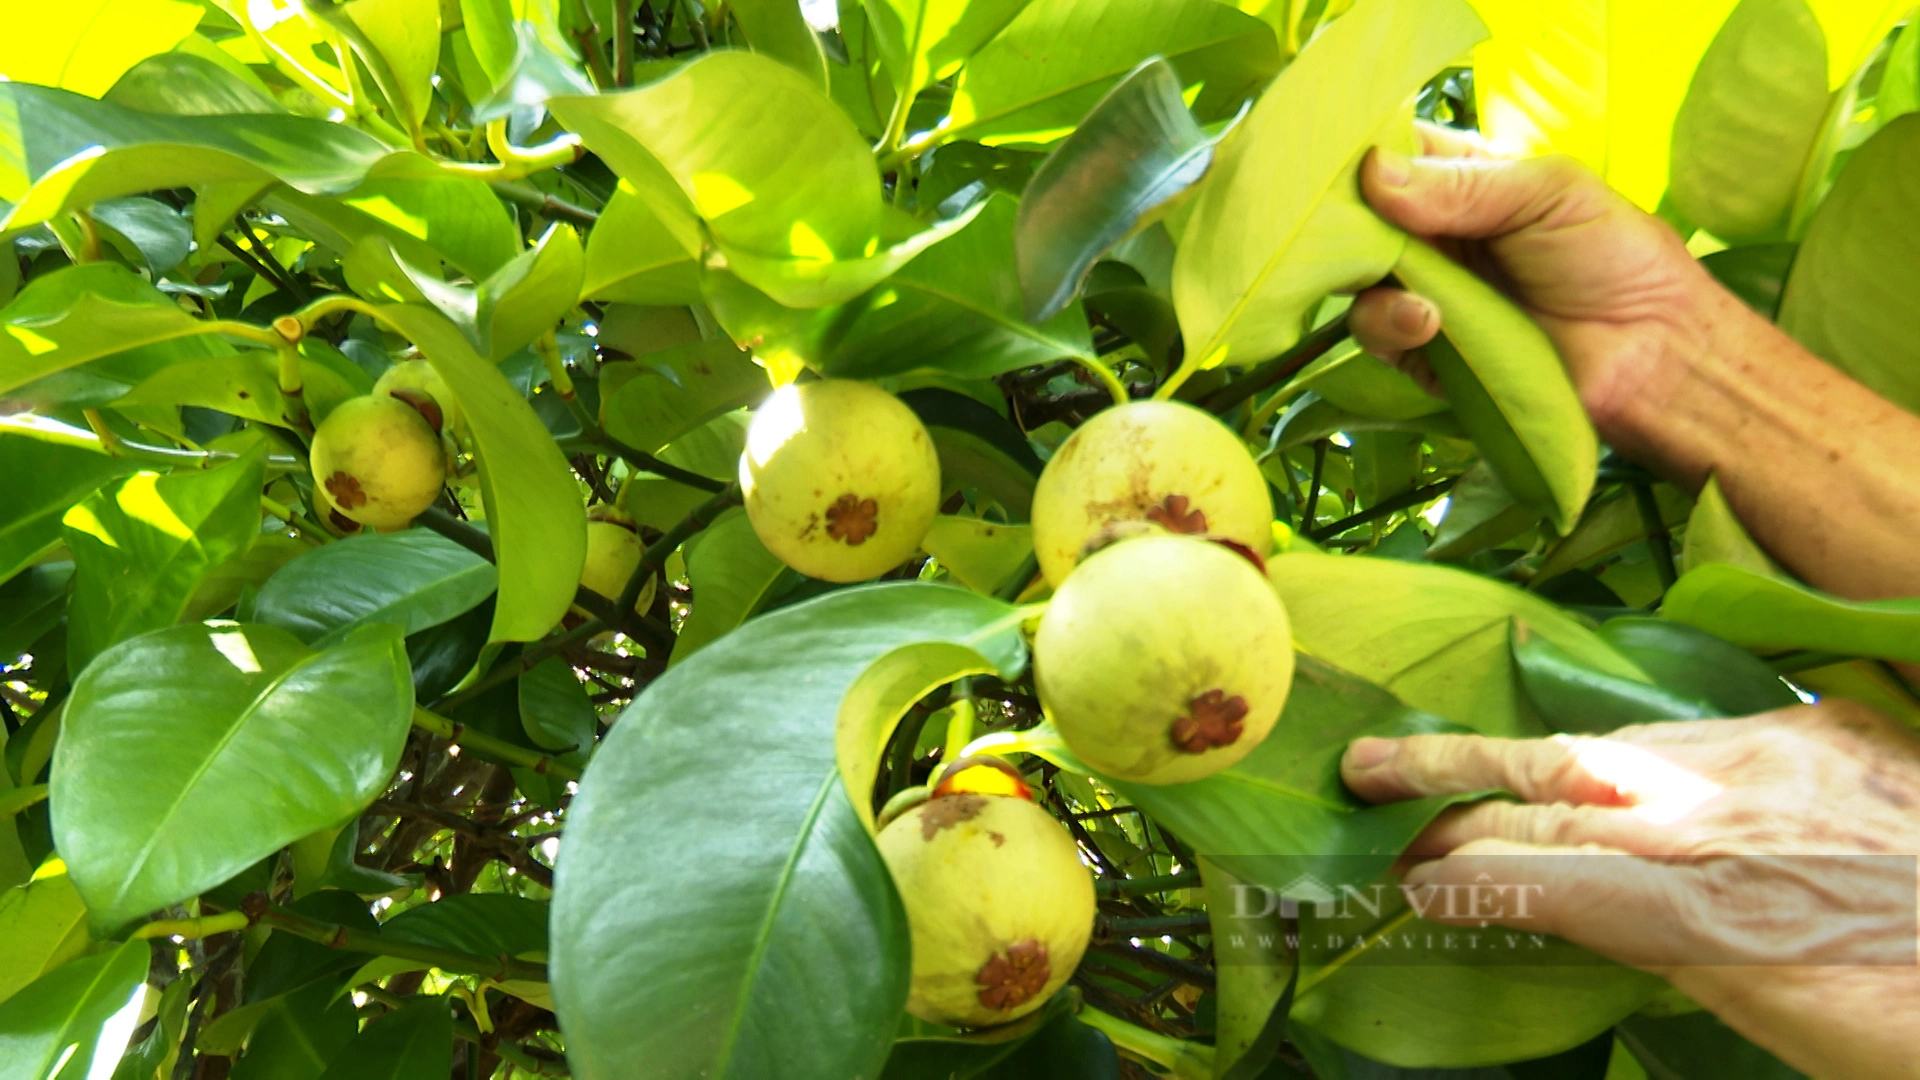 Nông dân Tiên Phước ở Quảng Nam trồng cây ăn quả, vừa hái ra tiền, vừa được hỗ trợ hàng chục tỷ đồng- Ảnh 3.